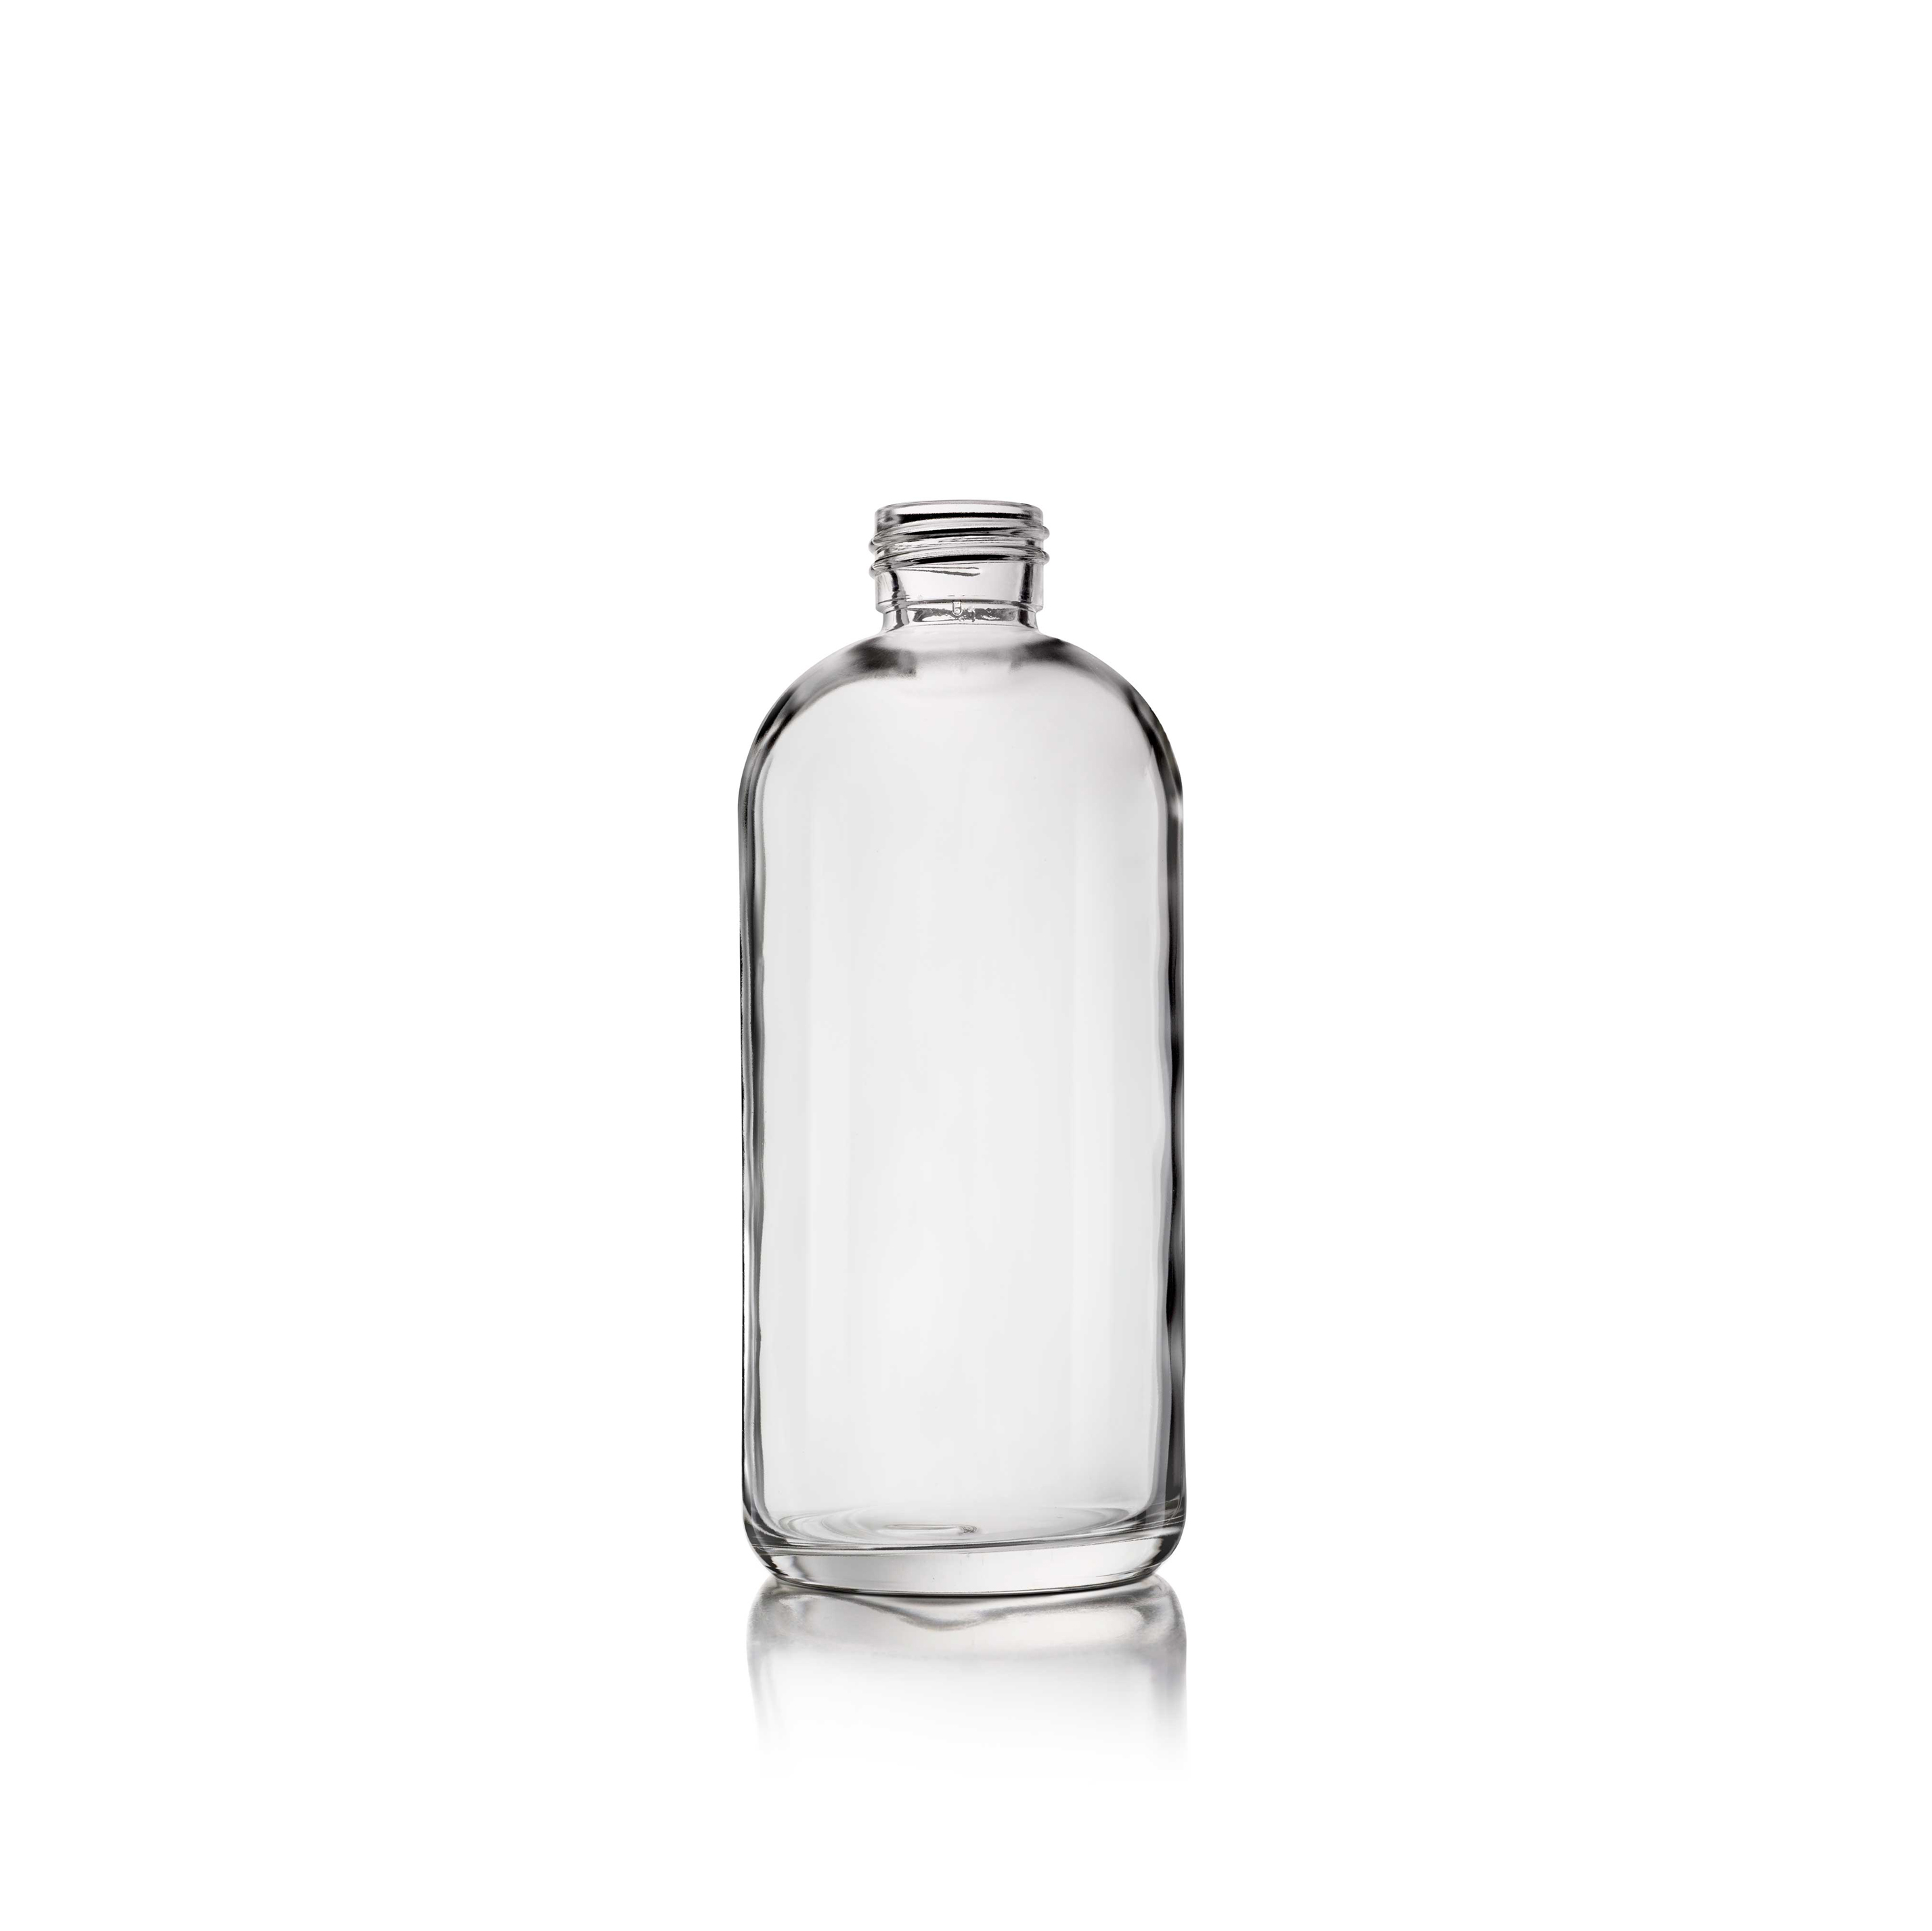 Cosmetic bottle Linden Light Weight 200ml, 24/410, Flint